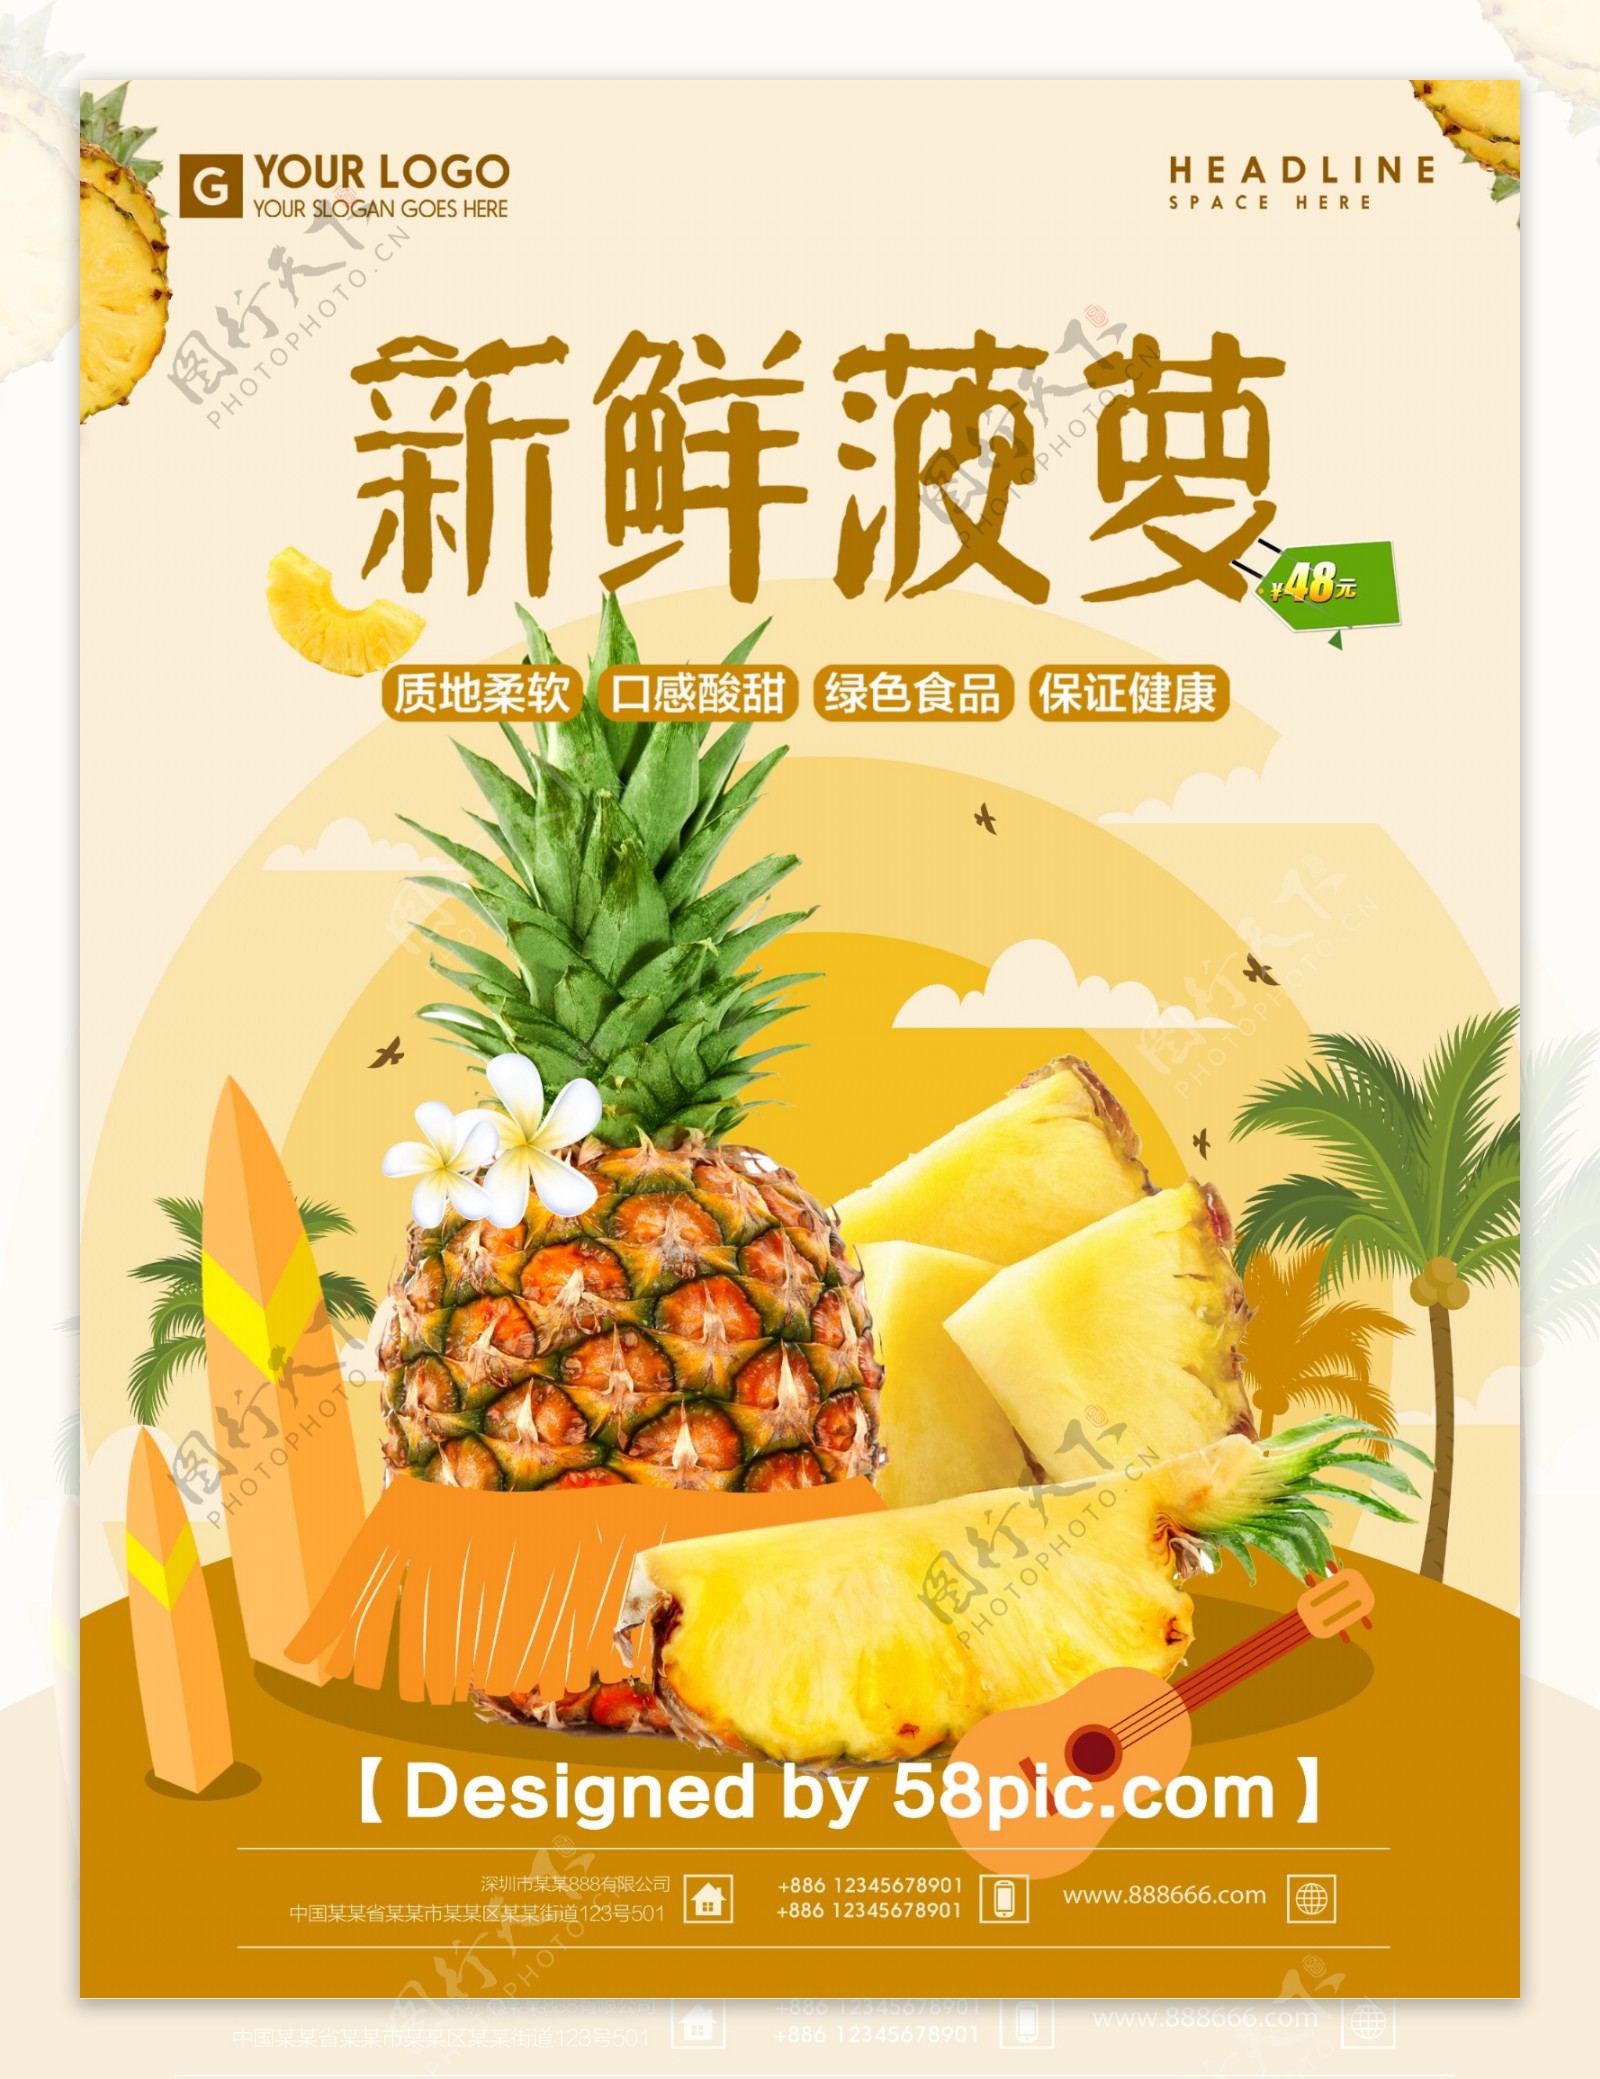 夏季水果清新菠萝宣传海报